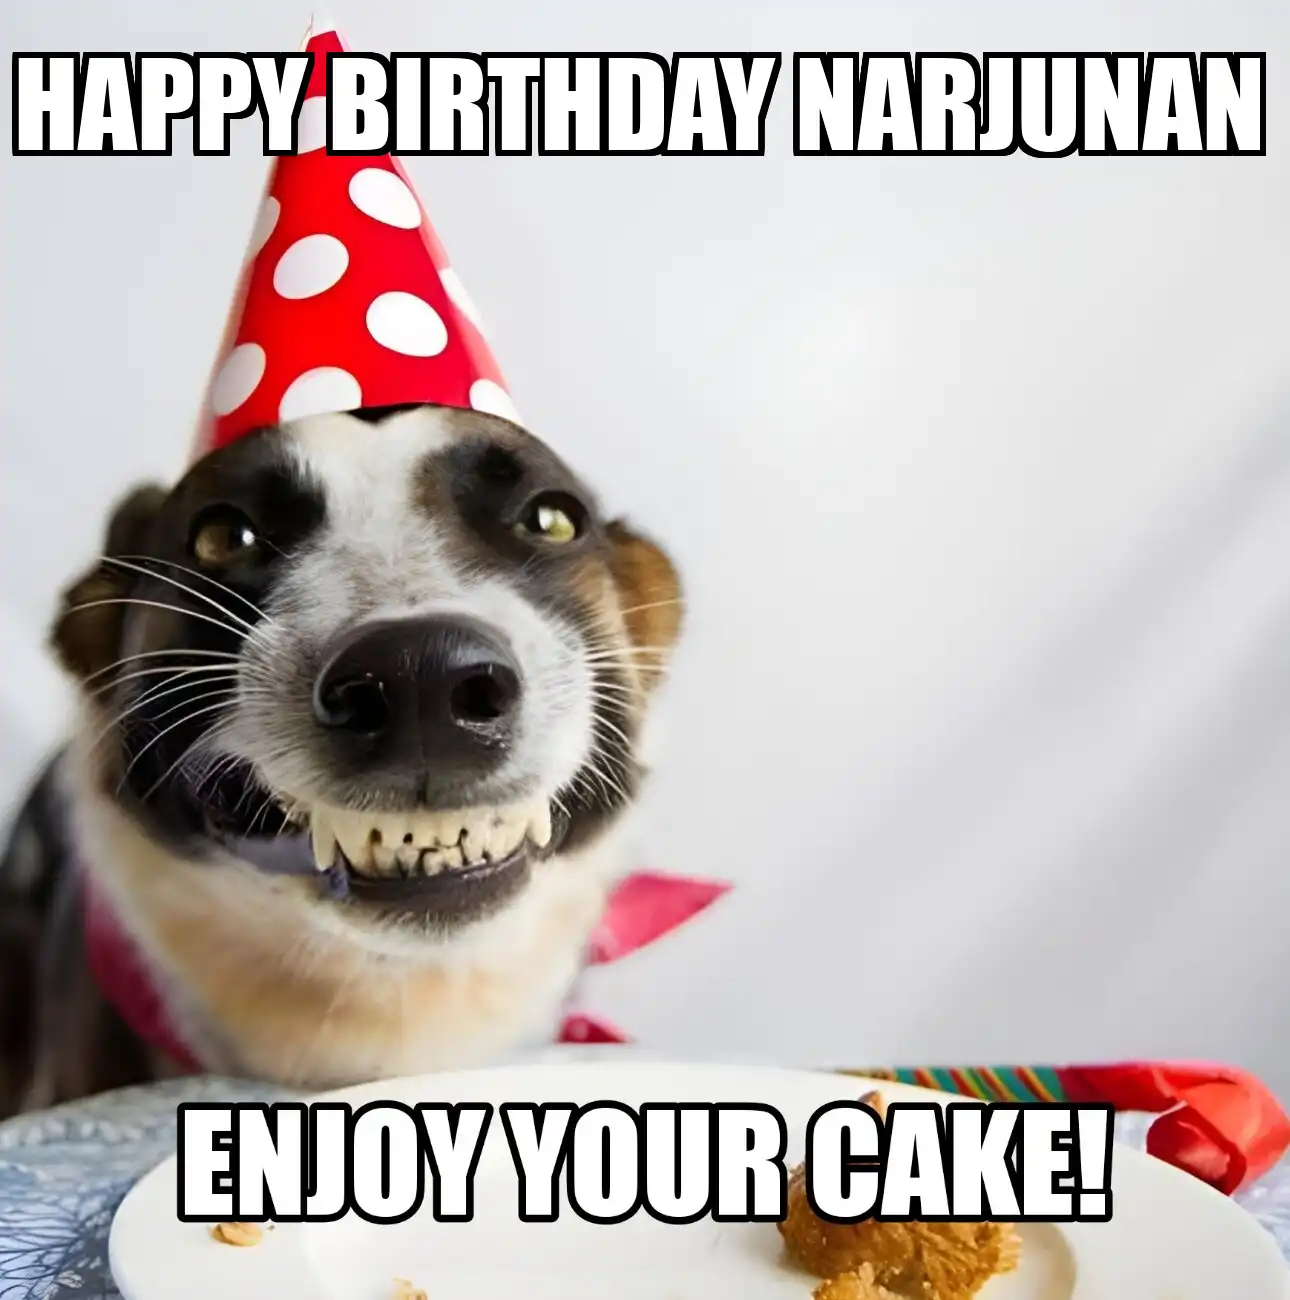 Happy Birthday Narjunan Enjoy Your Cake Dog Meme